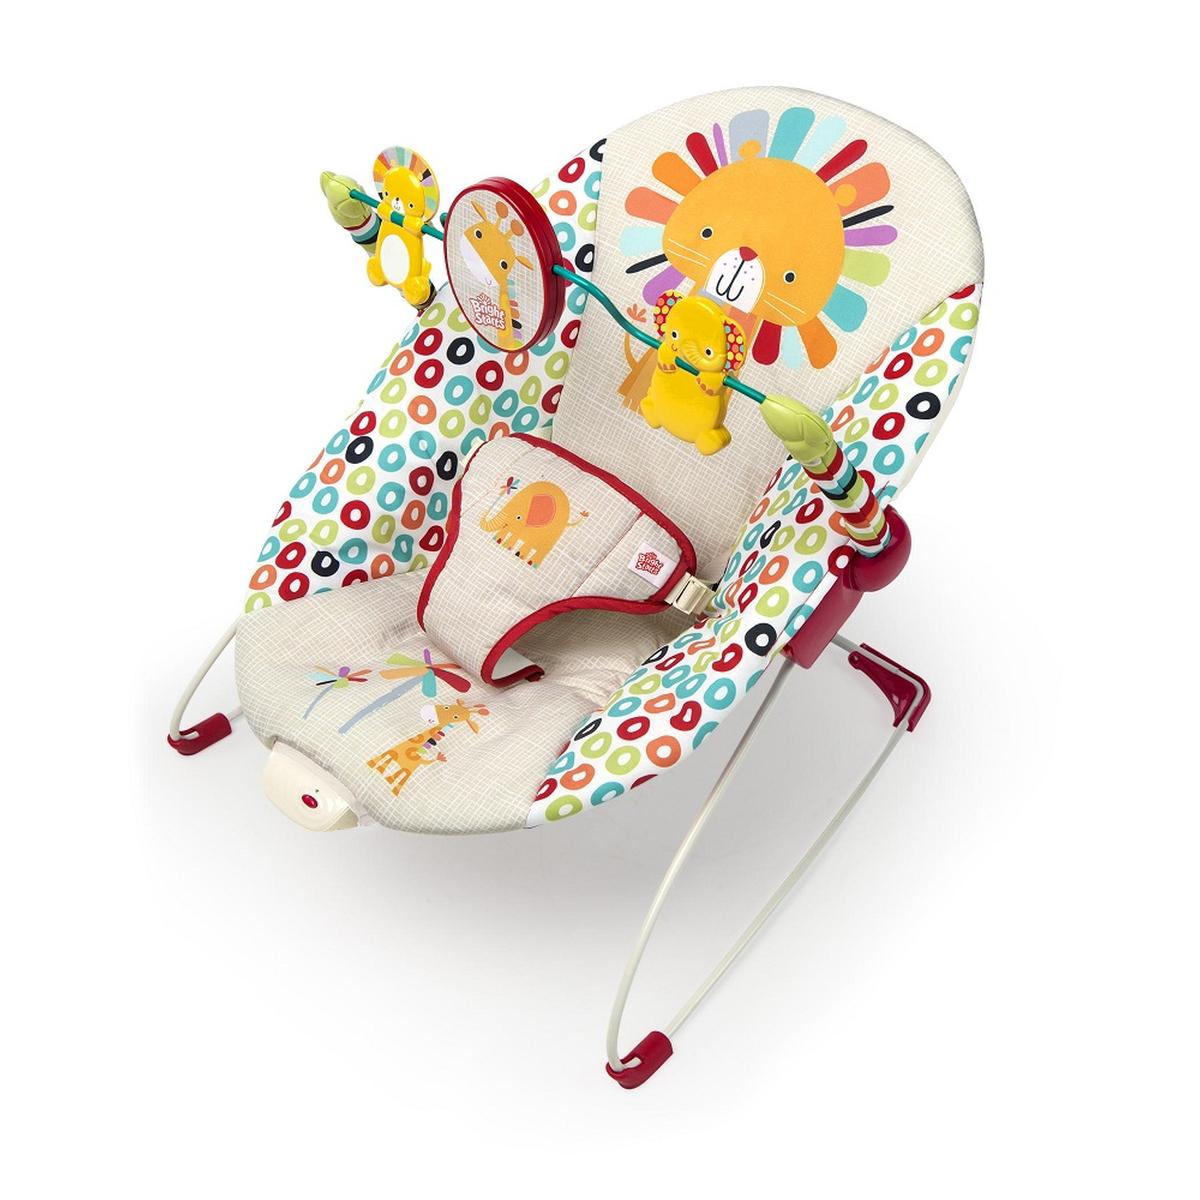 Bright Starts - Espreguiçadeira Playful Pinwheels | Espreguiçadeiras | Loja  de brinquedos e videojogos Online Toysrus